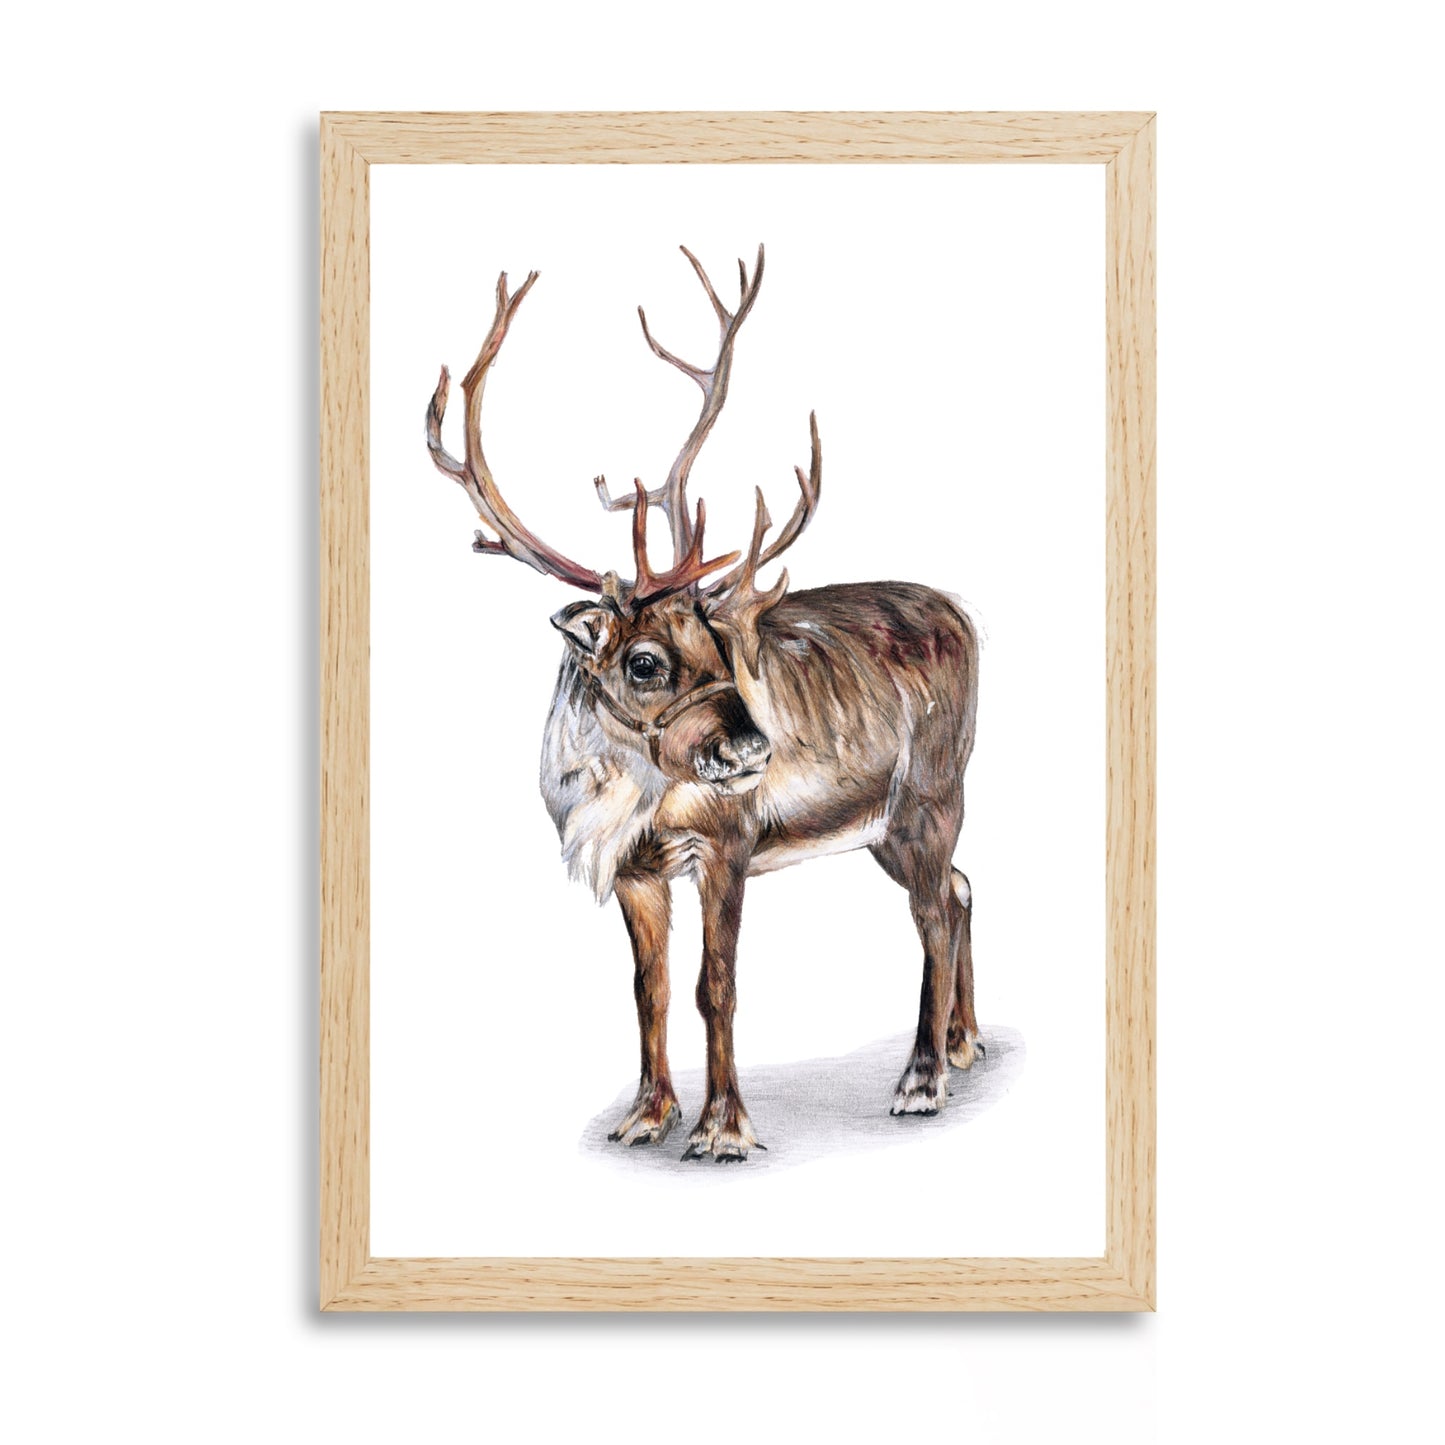 Prints “Reindeer”